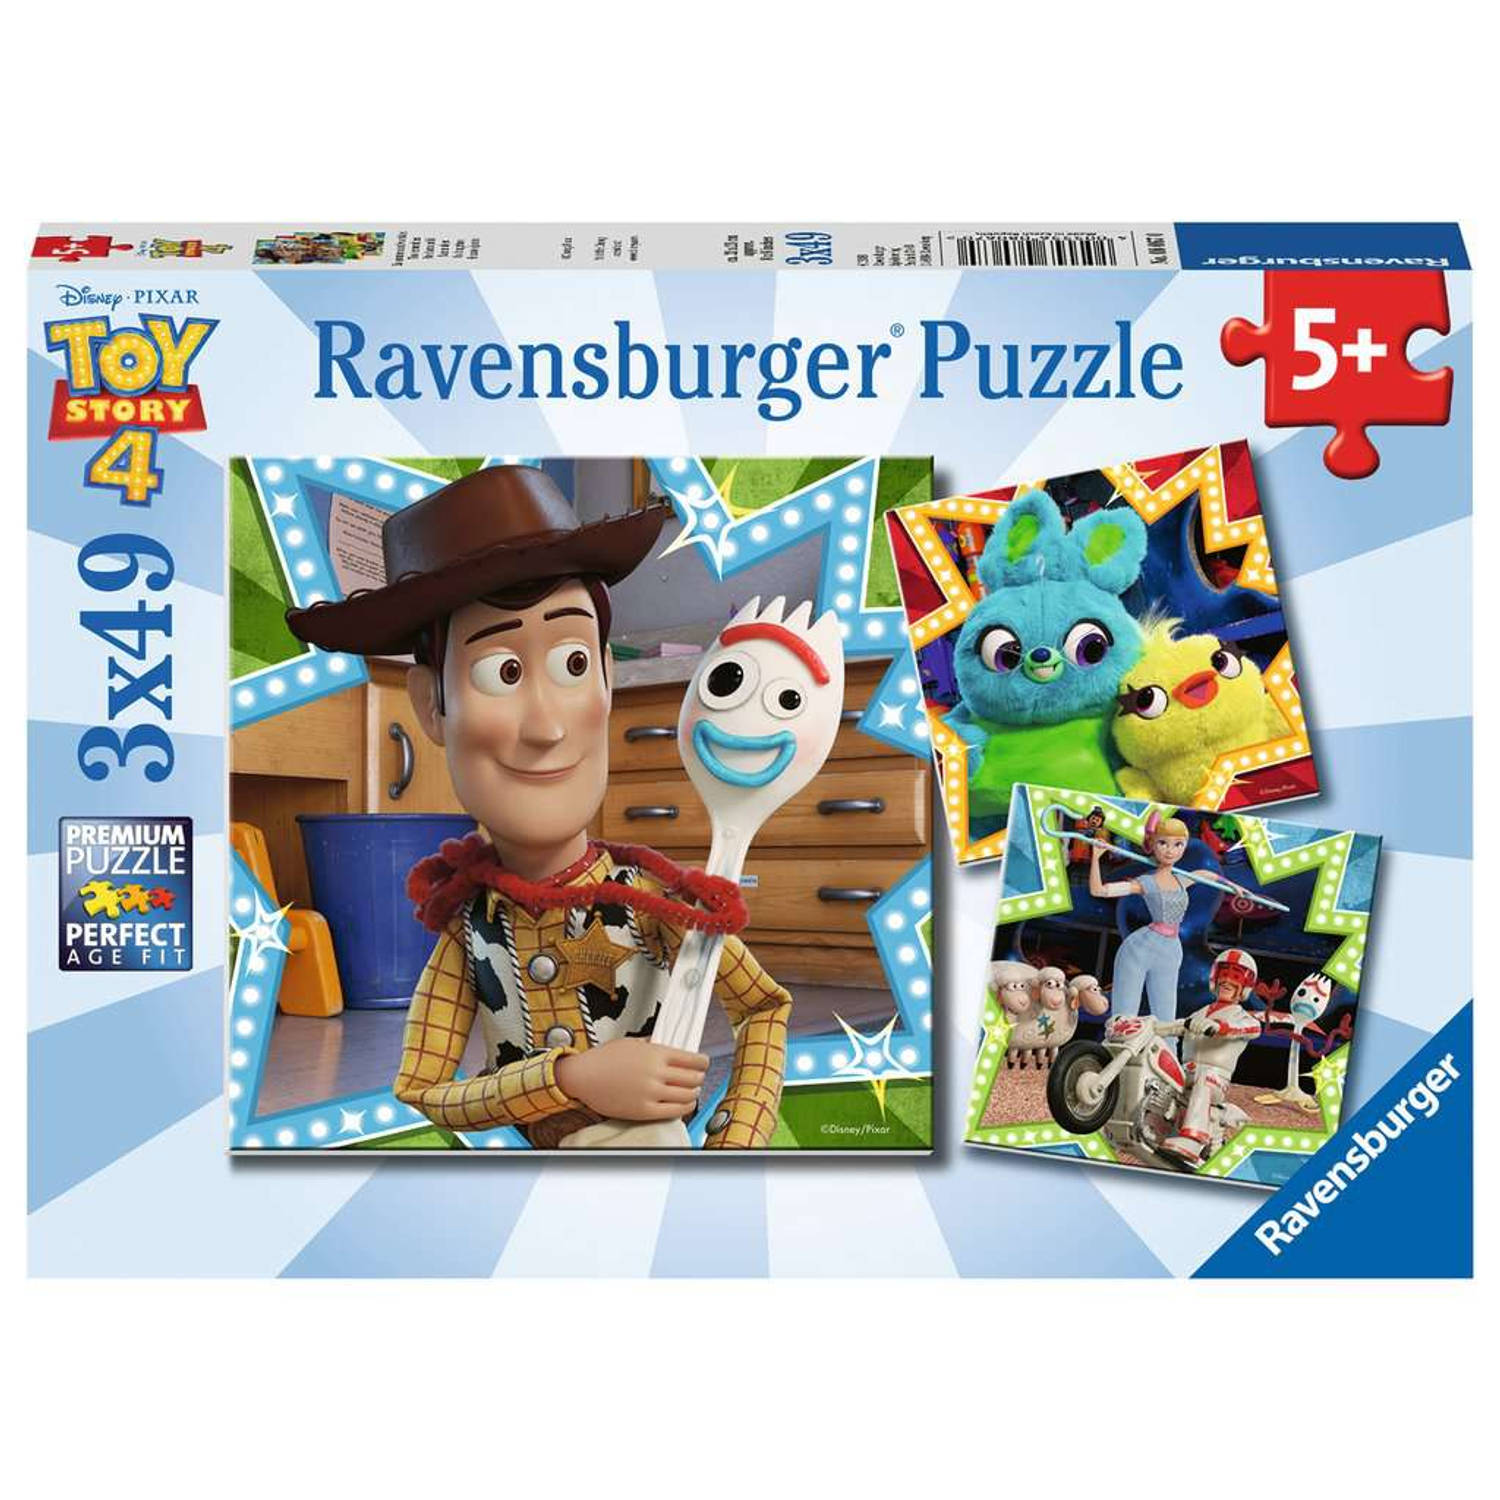 Ravensburger Toy Story 4 puzzel 3x49pcs